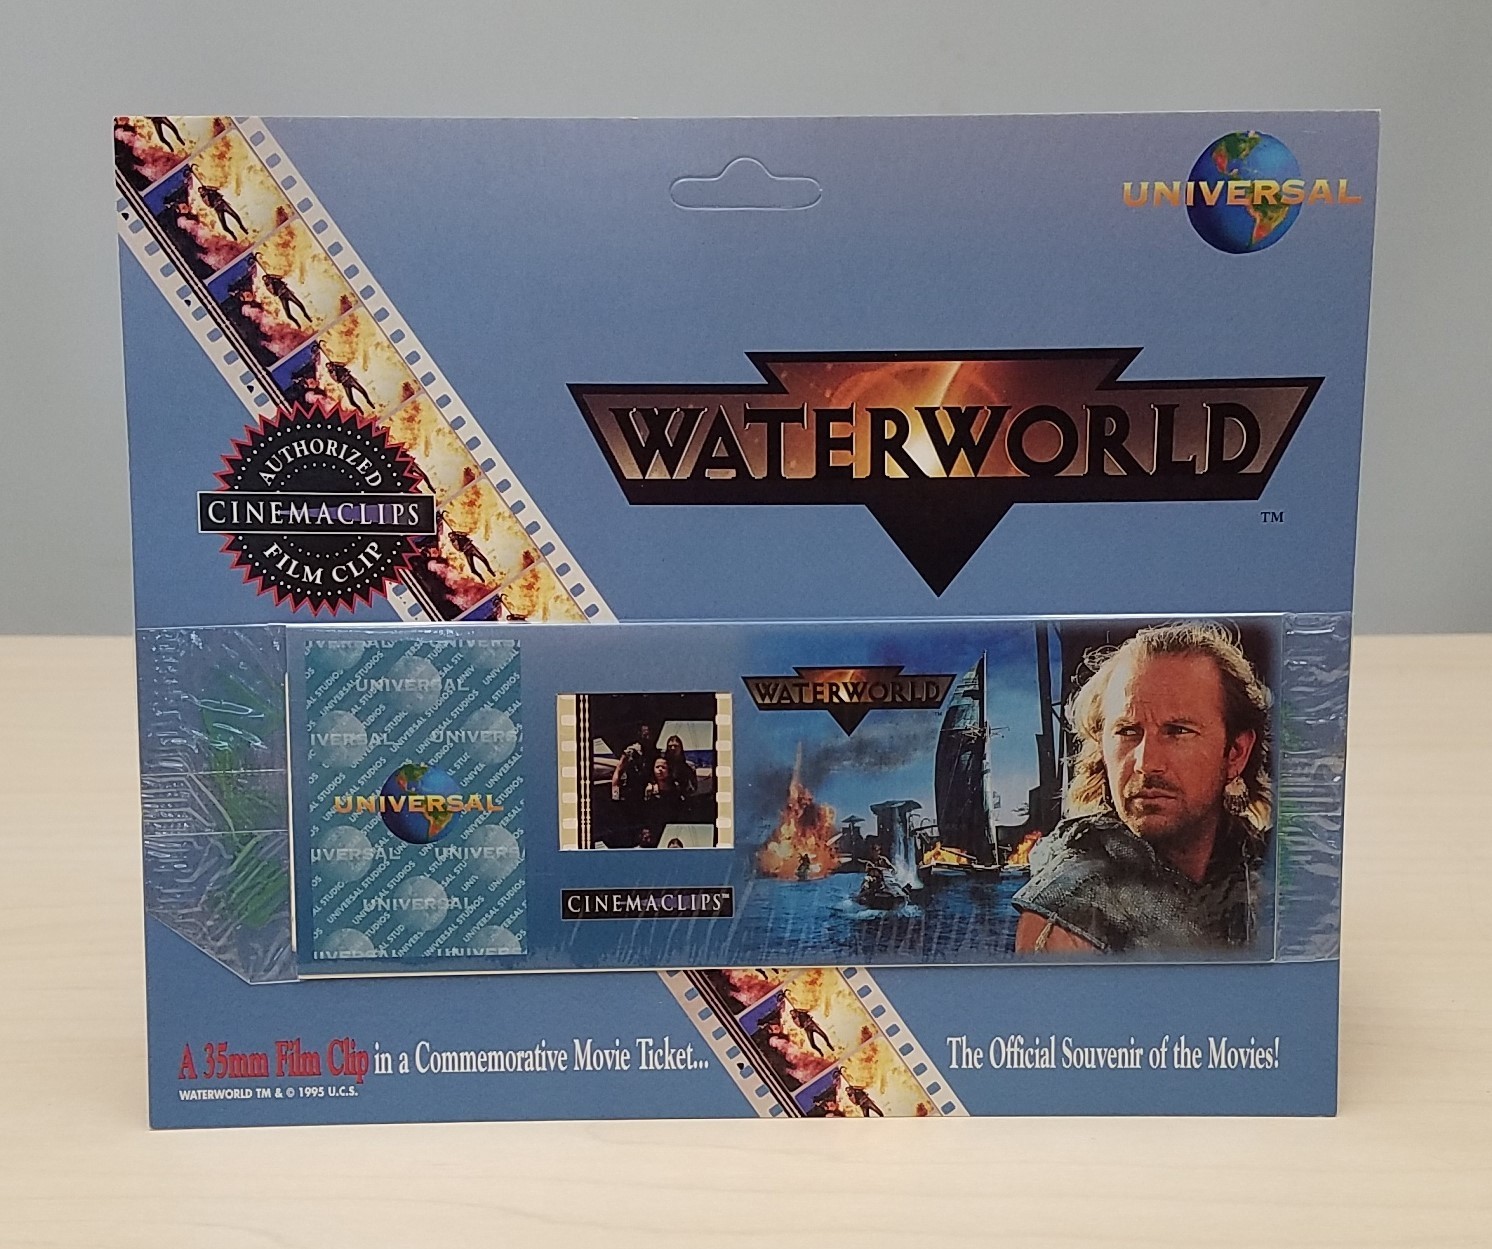 NEW 1995 Water World Cinemaclips 35mm Film Clip Movie Ticket